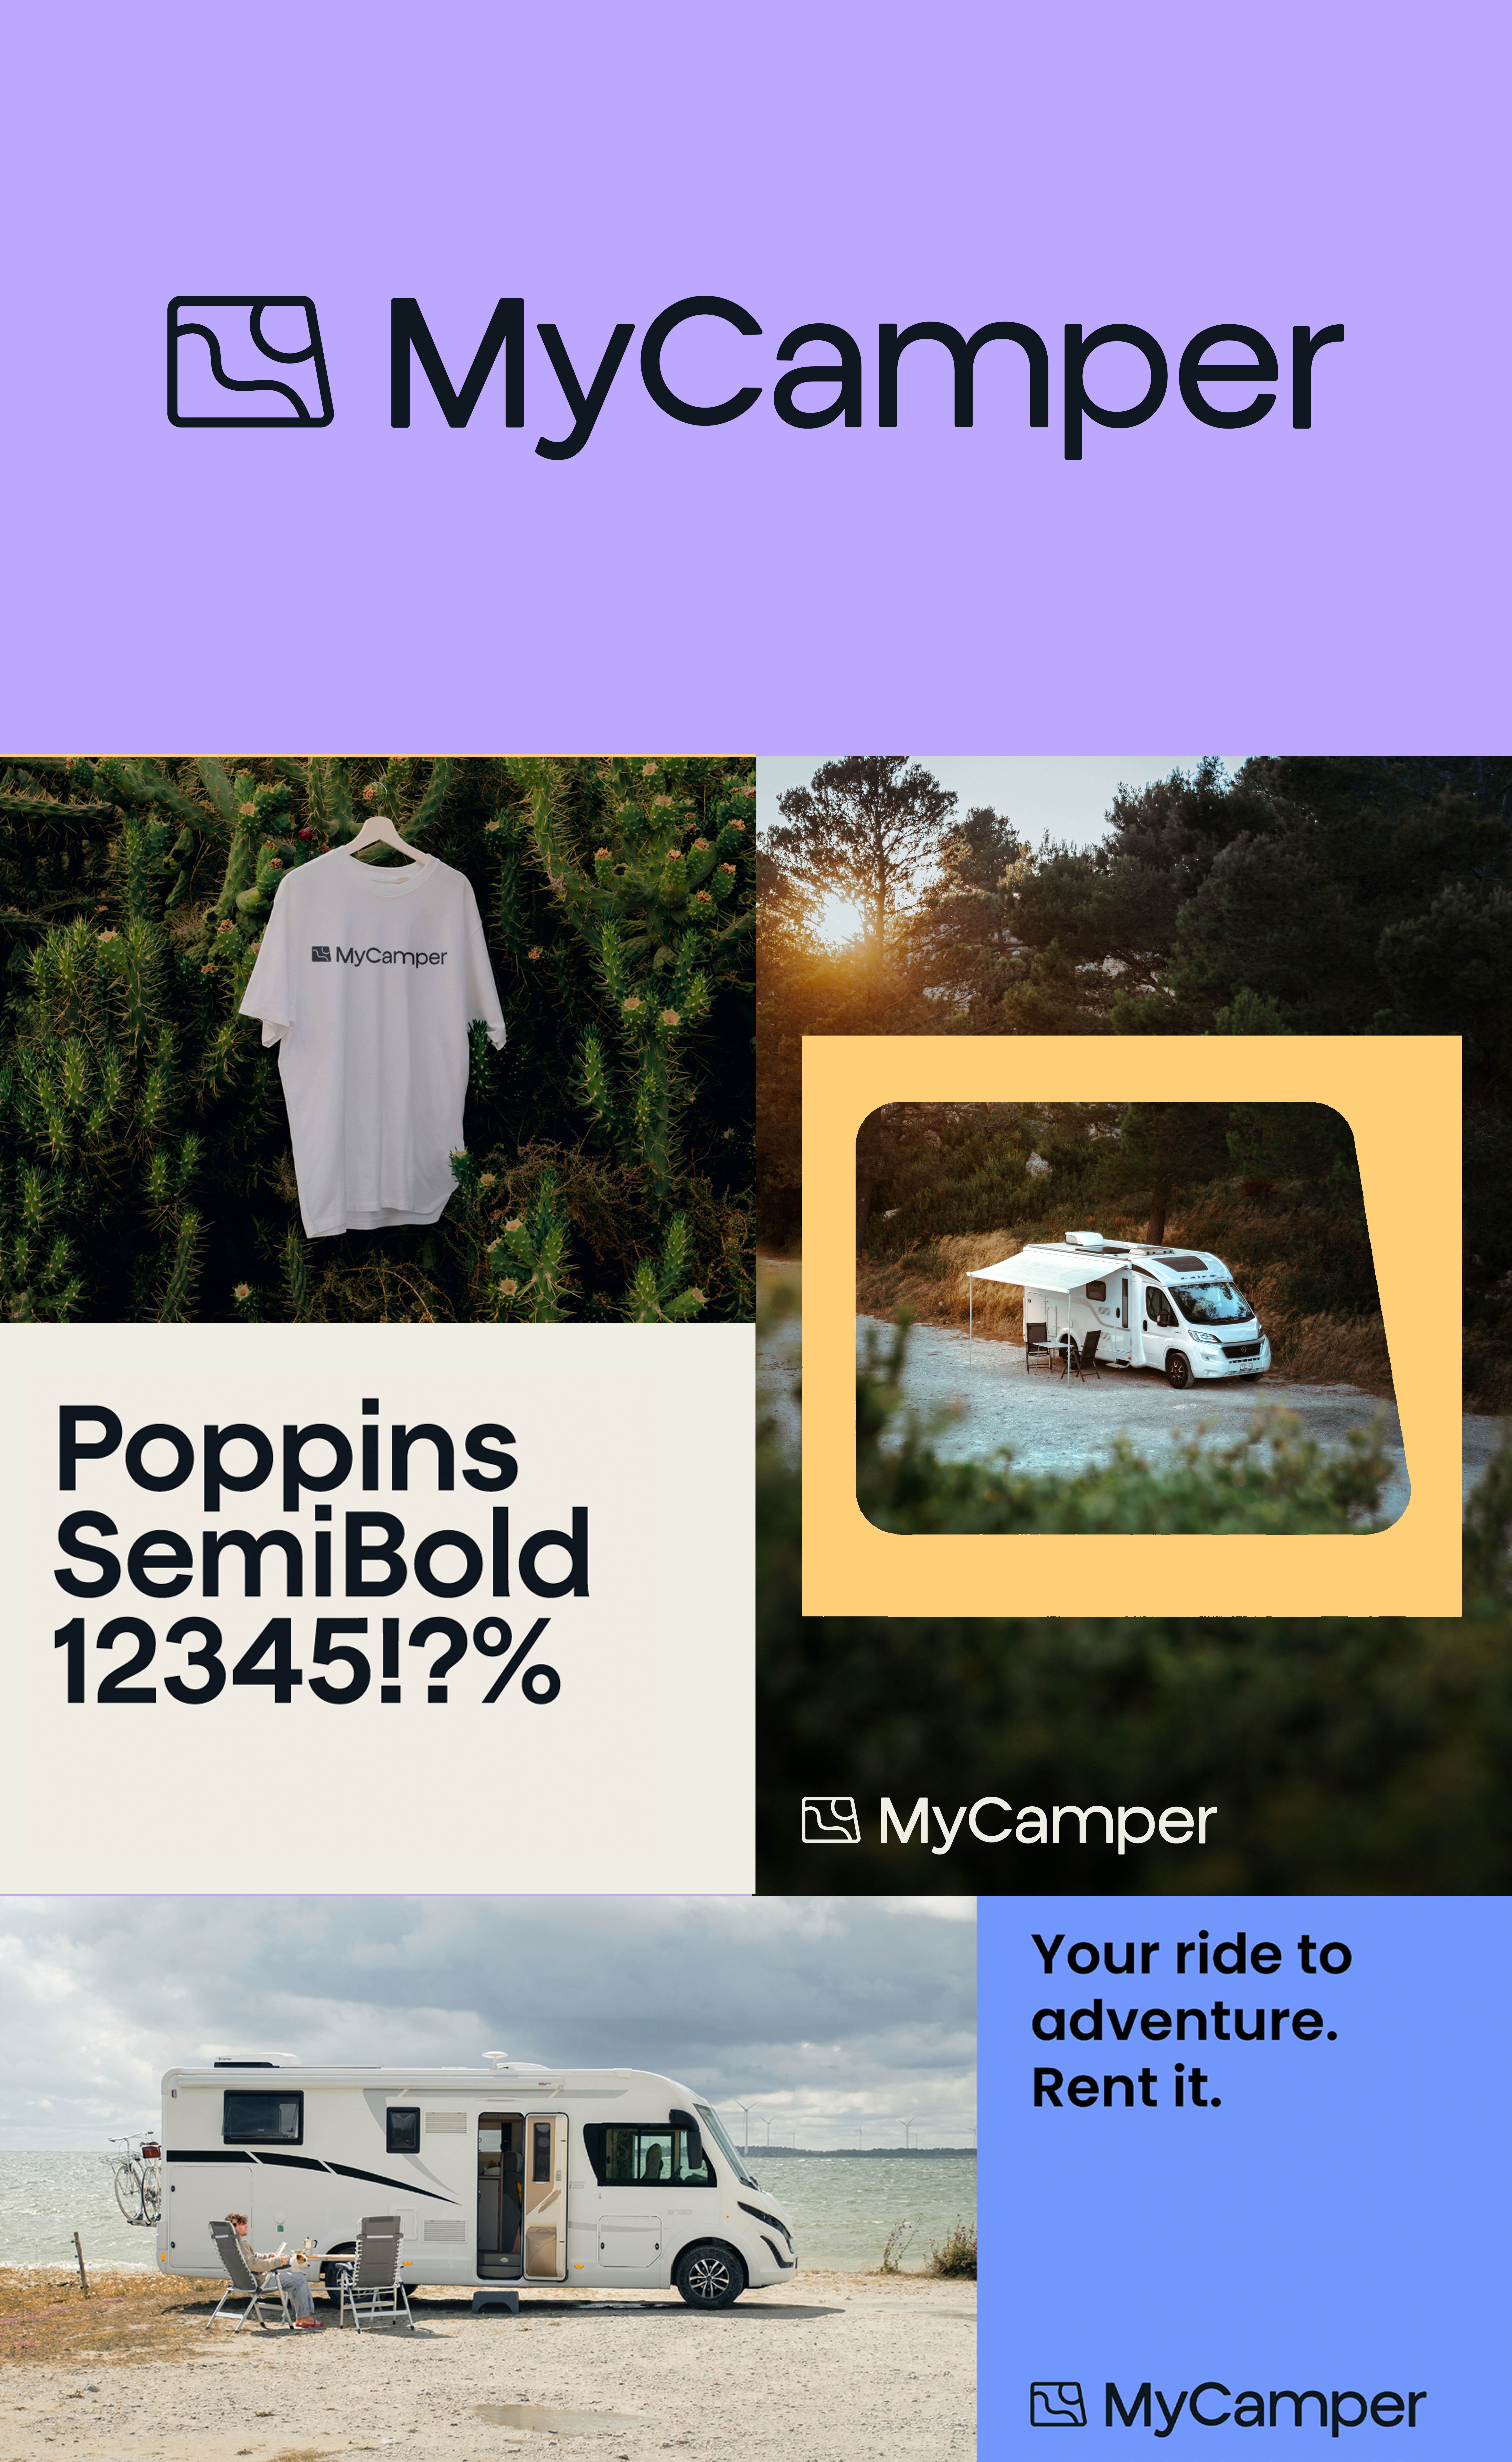 Den nya varumärkesidentiteten för MyCamper är öppen, varm och pålitlig.